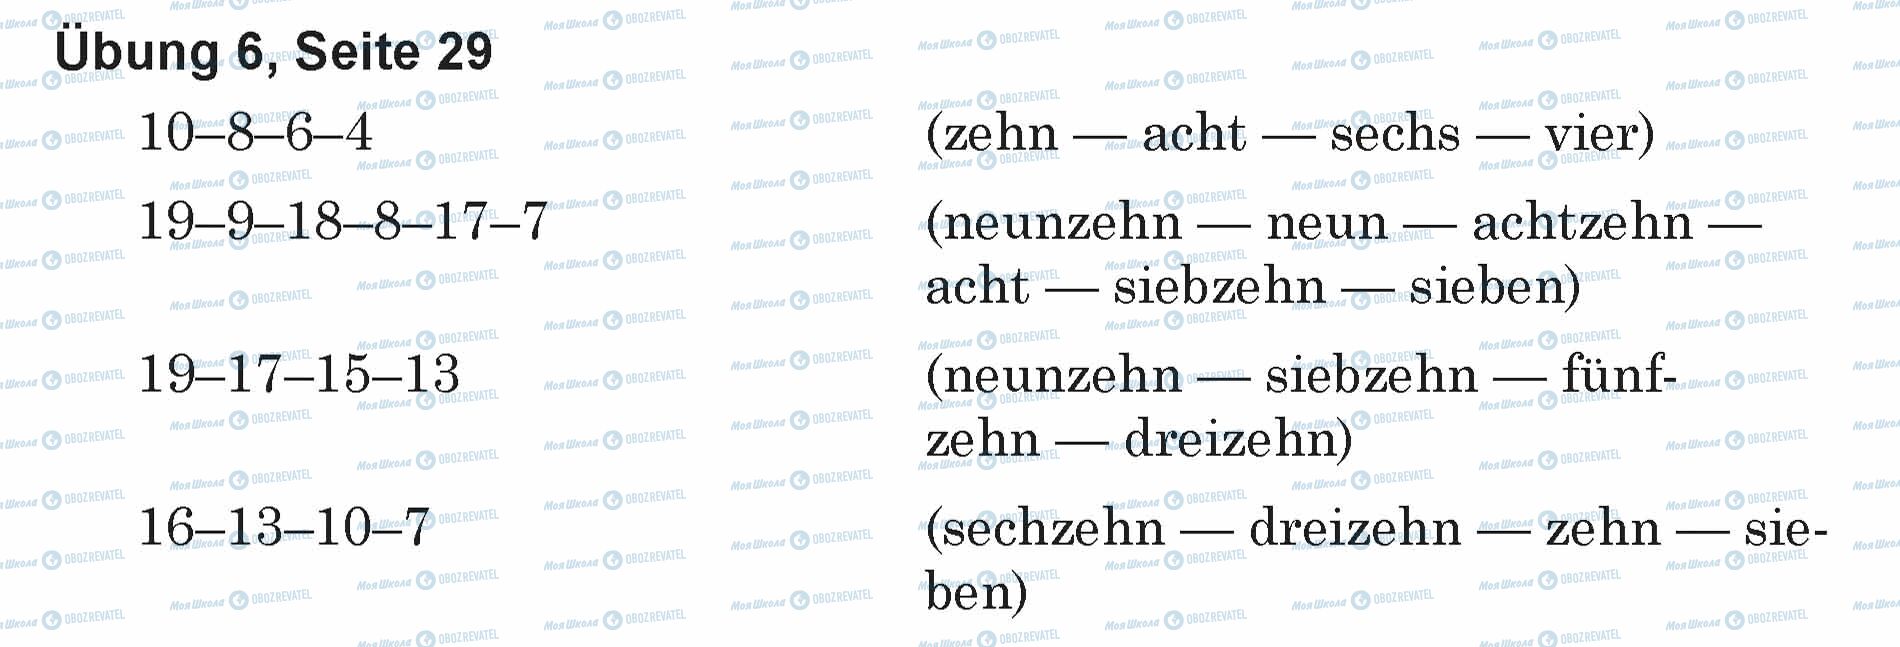 ГДЗ Німецька мова 5 клас сторінка Ubung 6, Seite 29